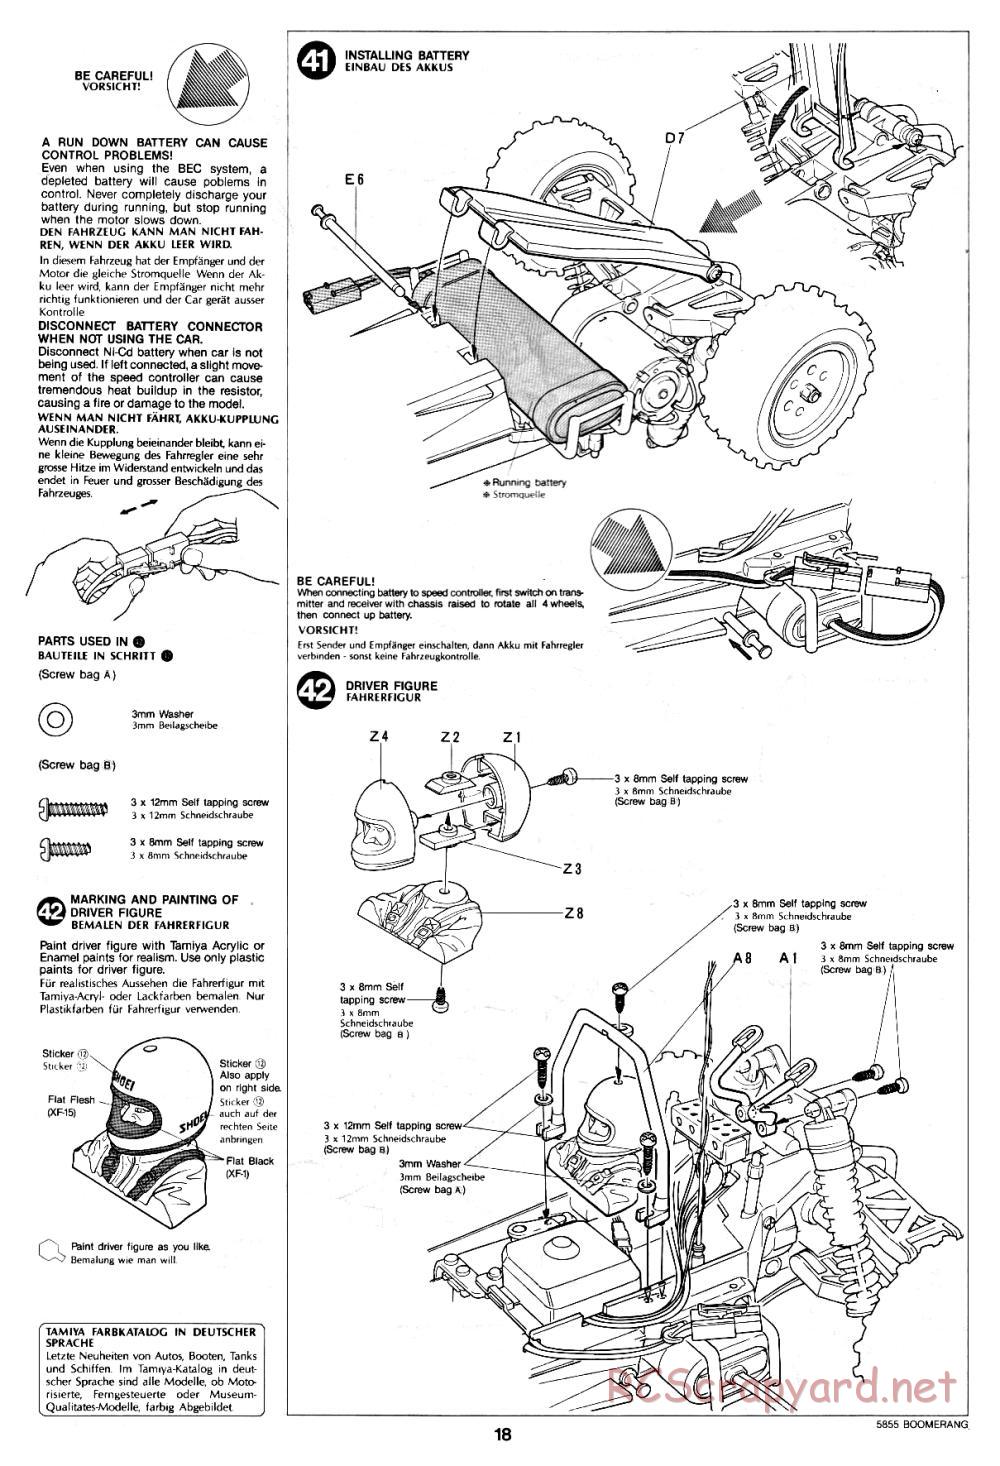 Tamiya - The Boomerang - 58055 - Manual - Page 18